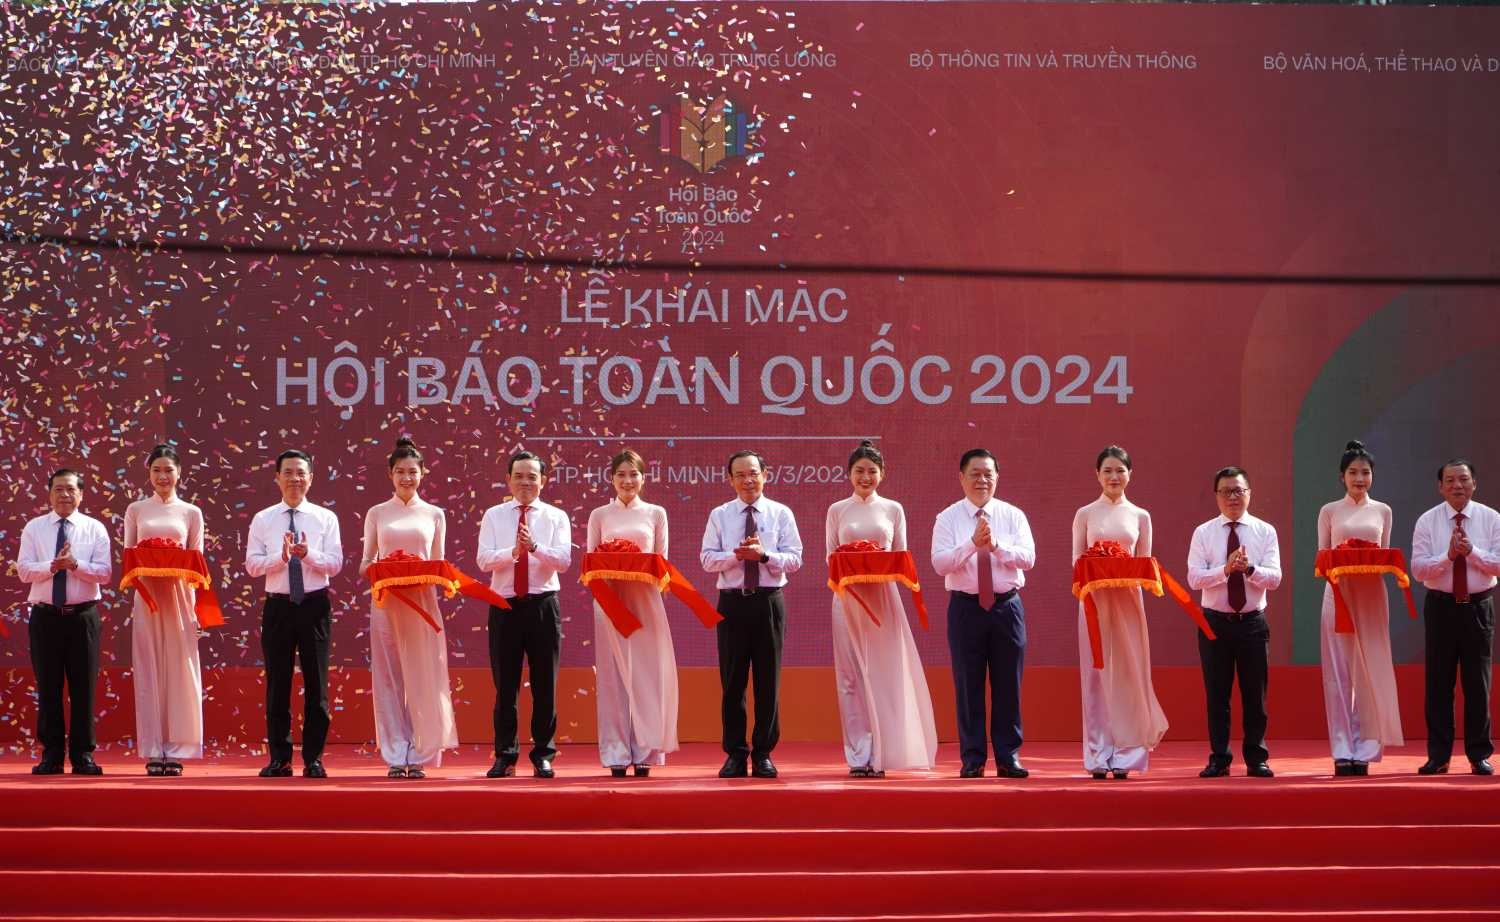 Khai mạc Hội Báo toàn quốc 2024: Báo chí Việt Nam - Tiên phong, Đổi mới vì Sự nghiệp cách mạng của Đảng và Nhân dân